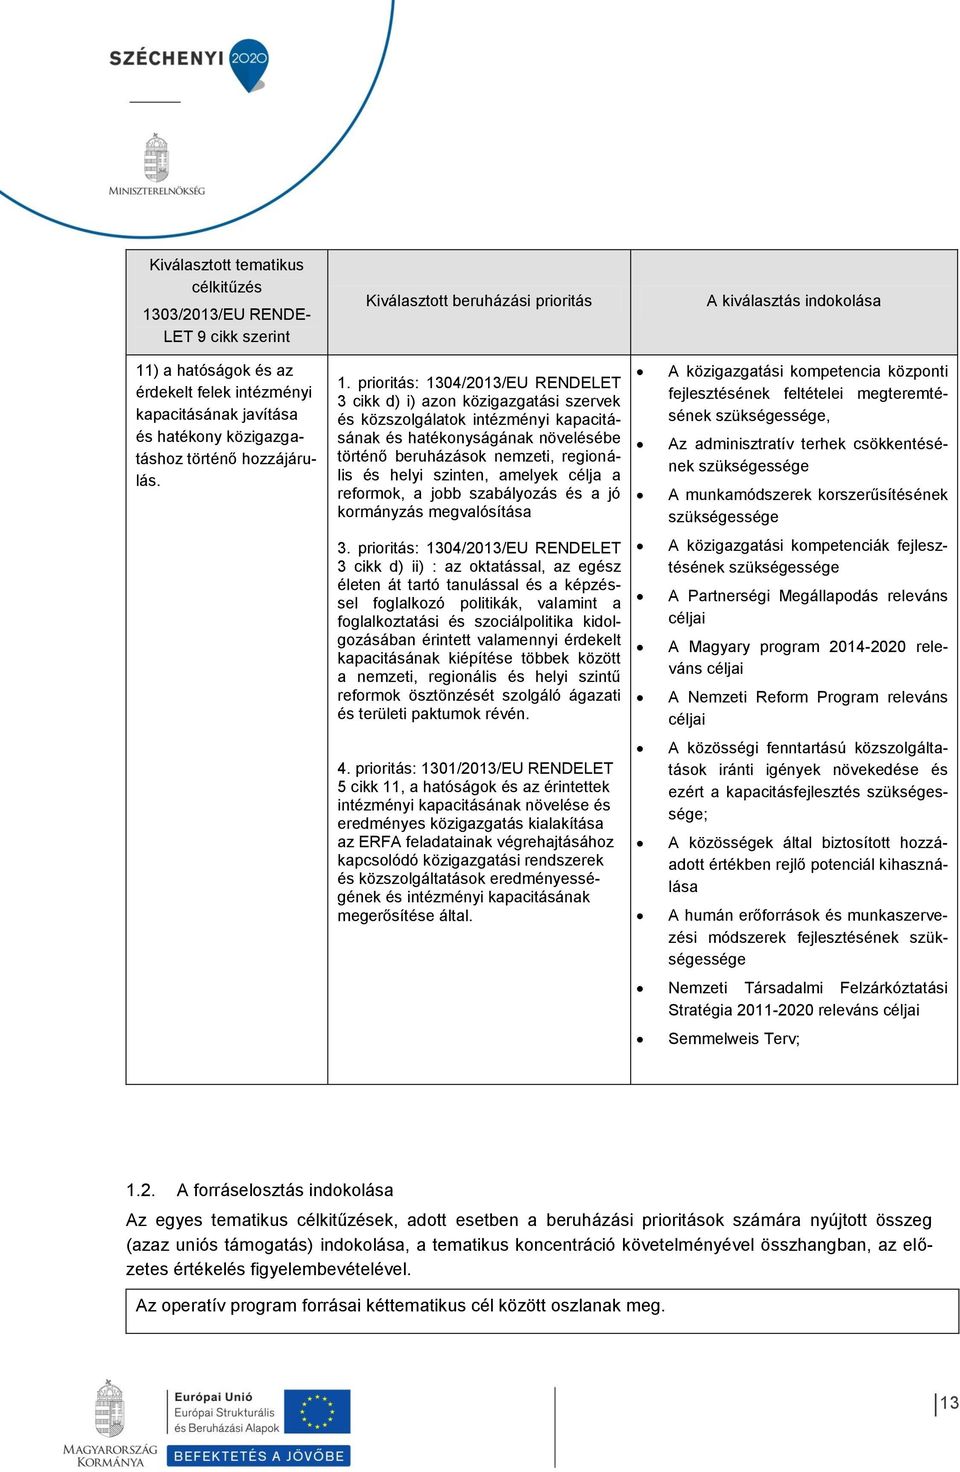 prioritás: 1304/2013/EU RENDELET 3 cikk d) i) azon közigazgatási szervek és közszolgálatok intézményi kapacitásának és hatékonyságának növelésébe történő beruházások nemzeti, regionális és helyi